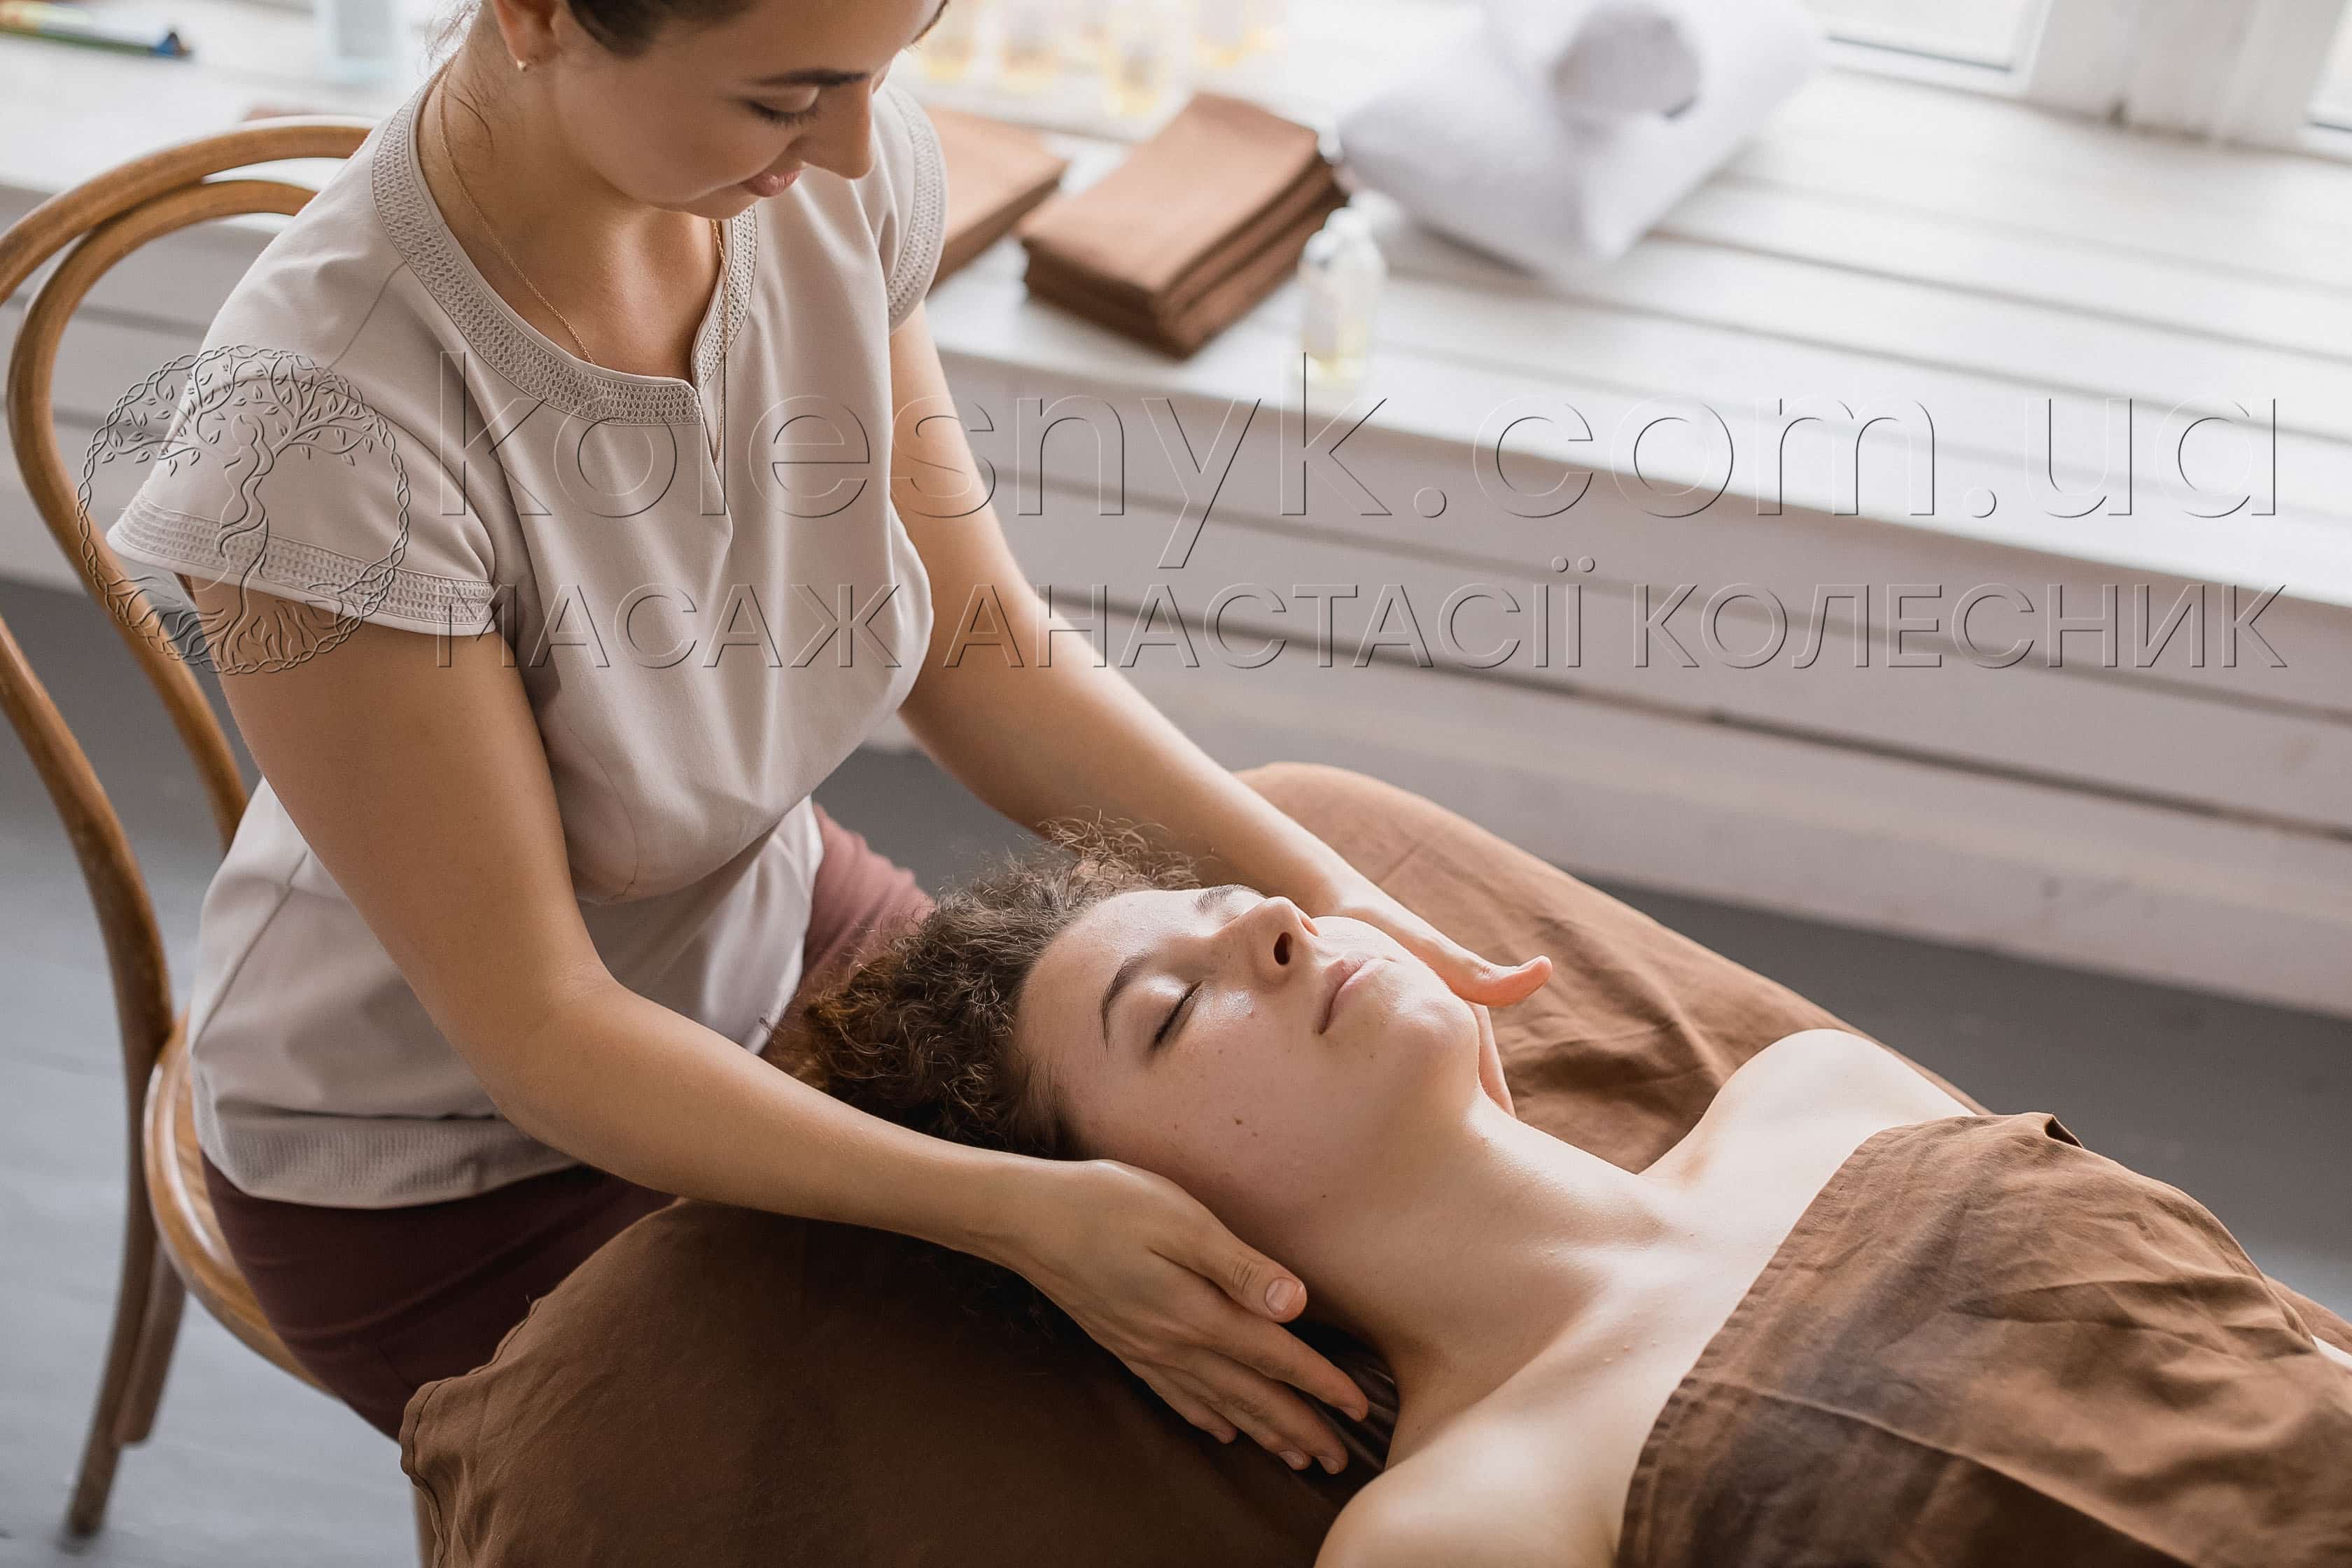 Розслабитись та побути в собі - мета релакс масажу